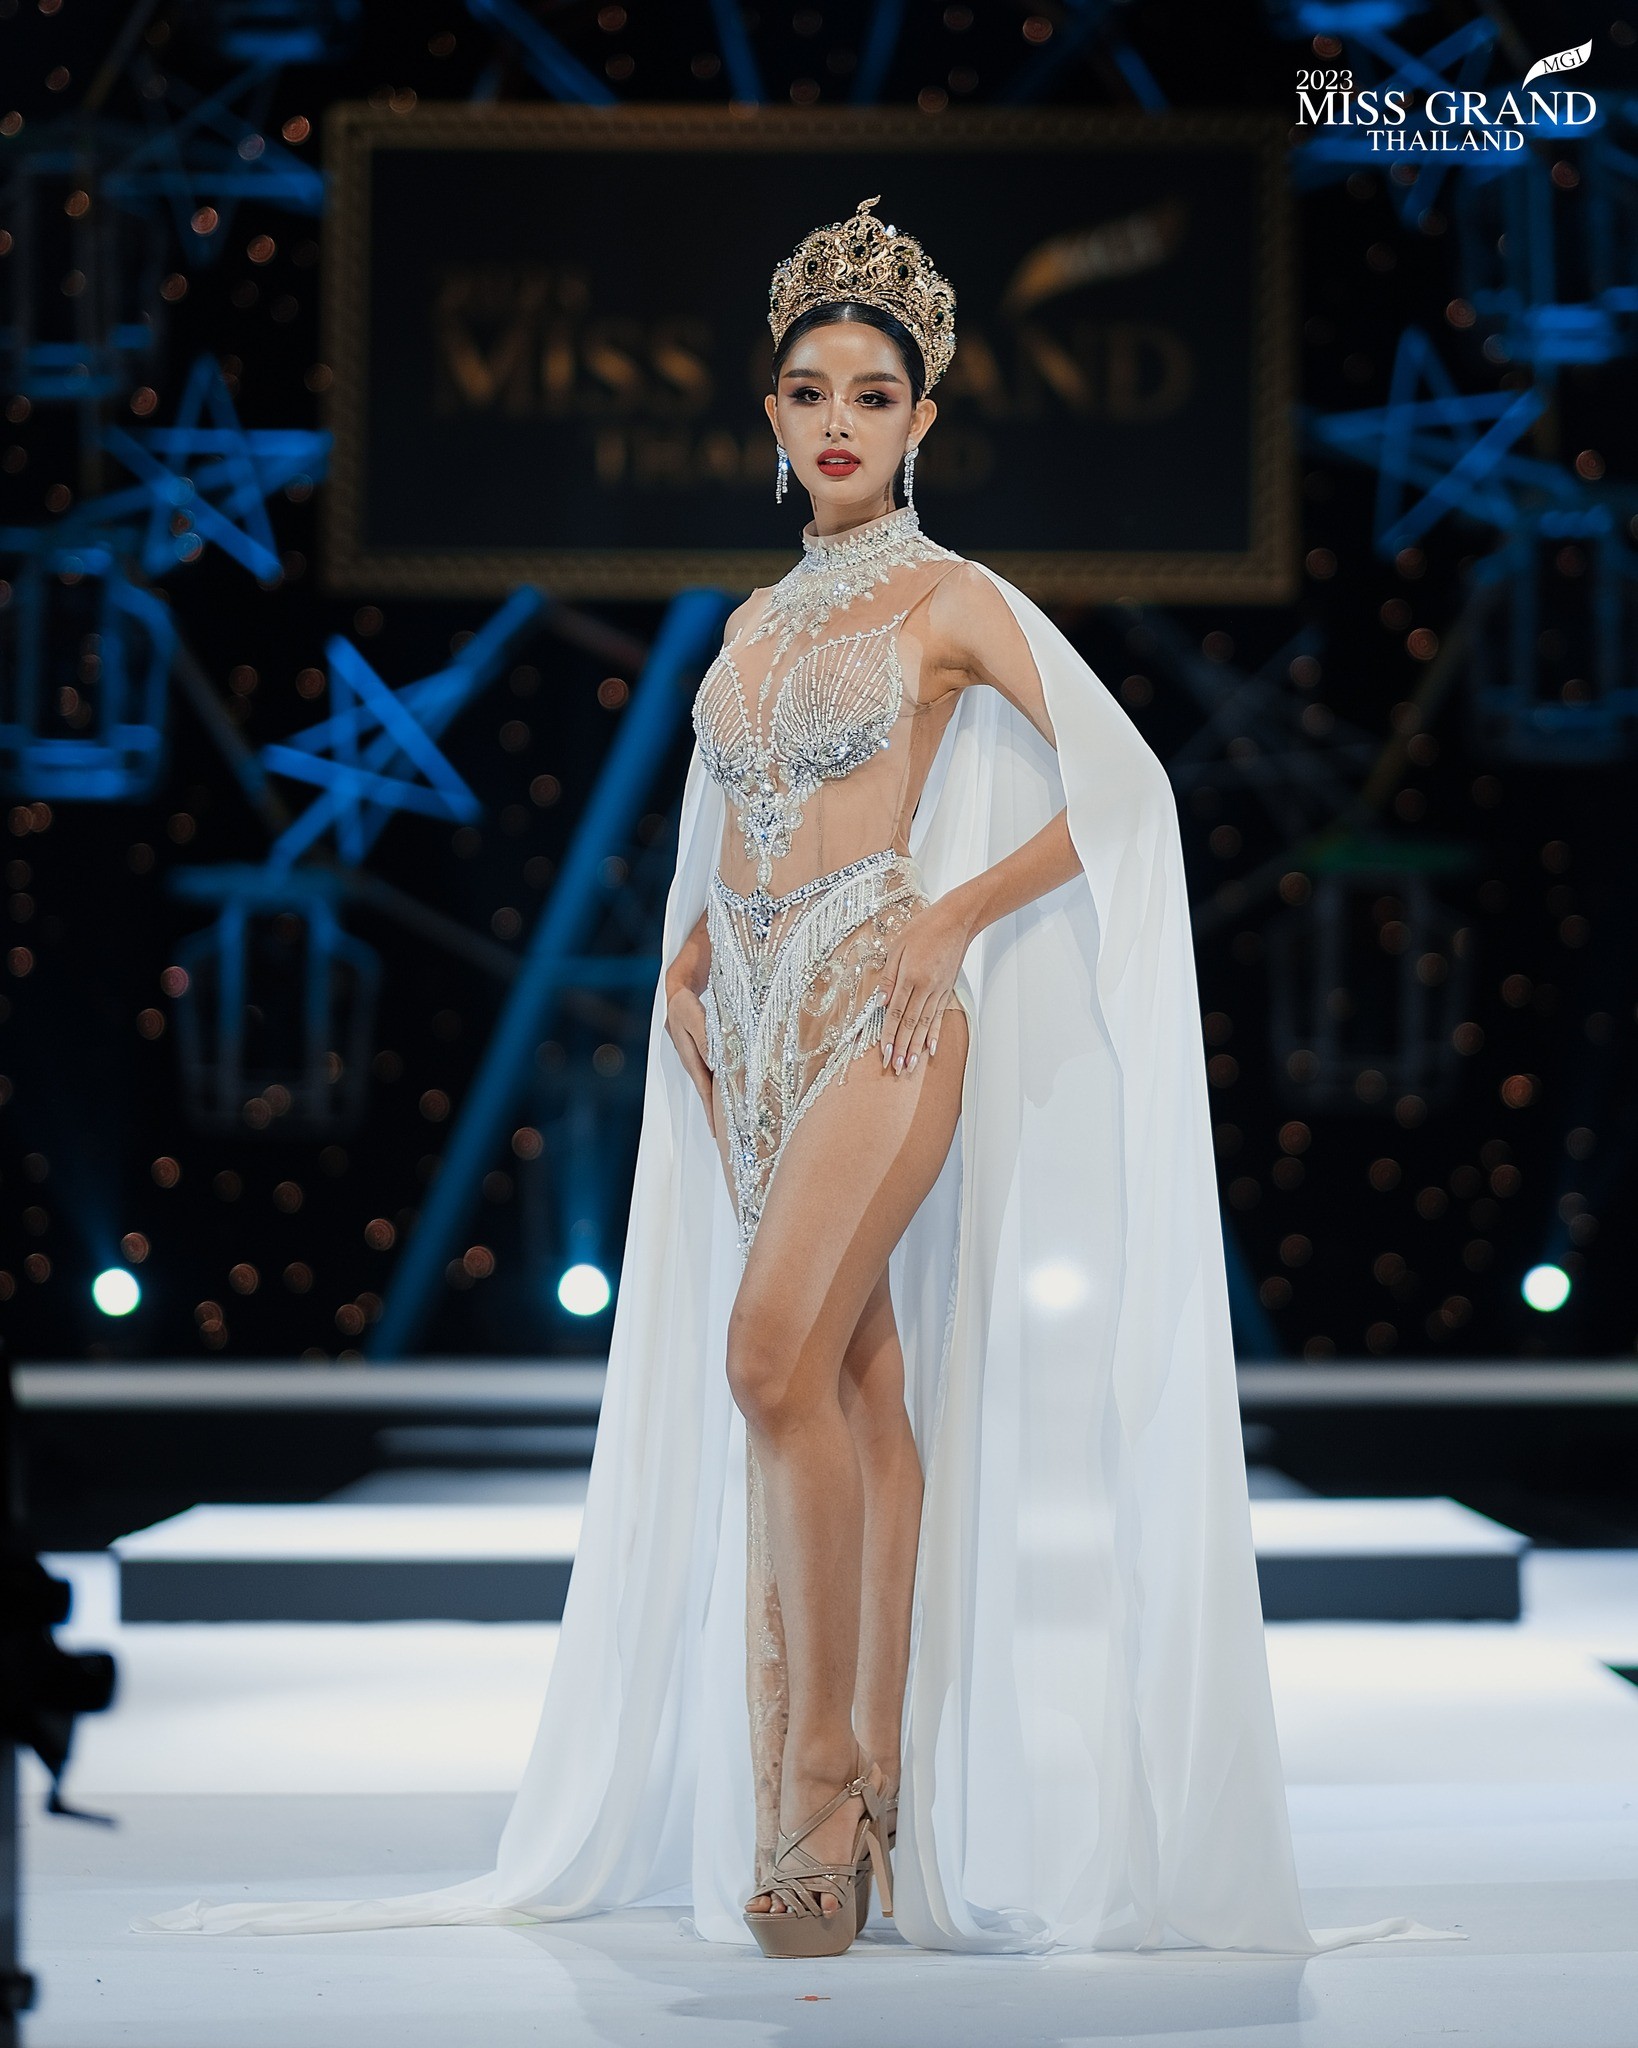 Váy áo cắt xẻ phản cảm tràn ngập Hoa hậu Hòa bình Thái Lan - Ảnh 2.